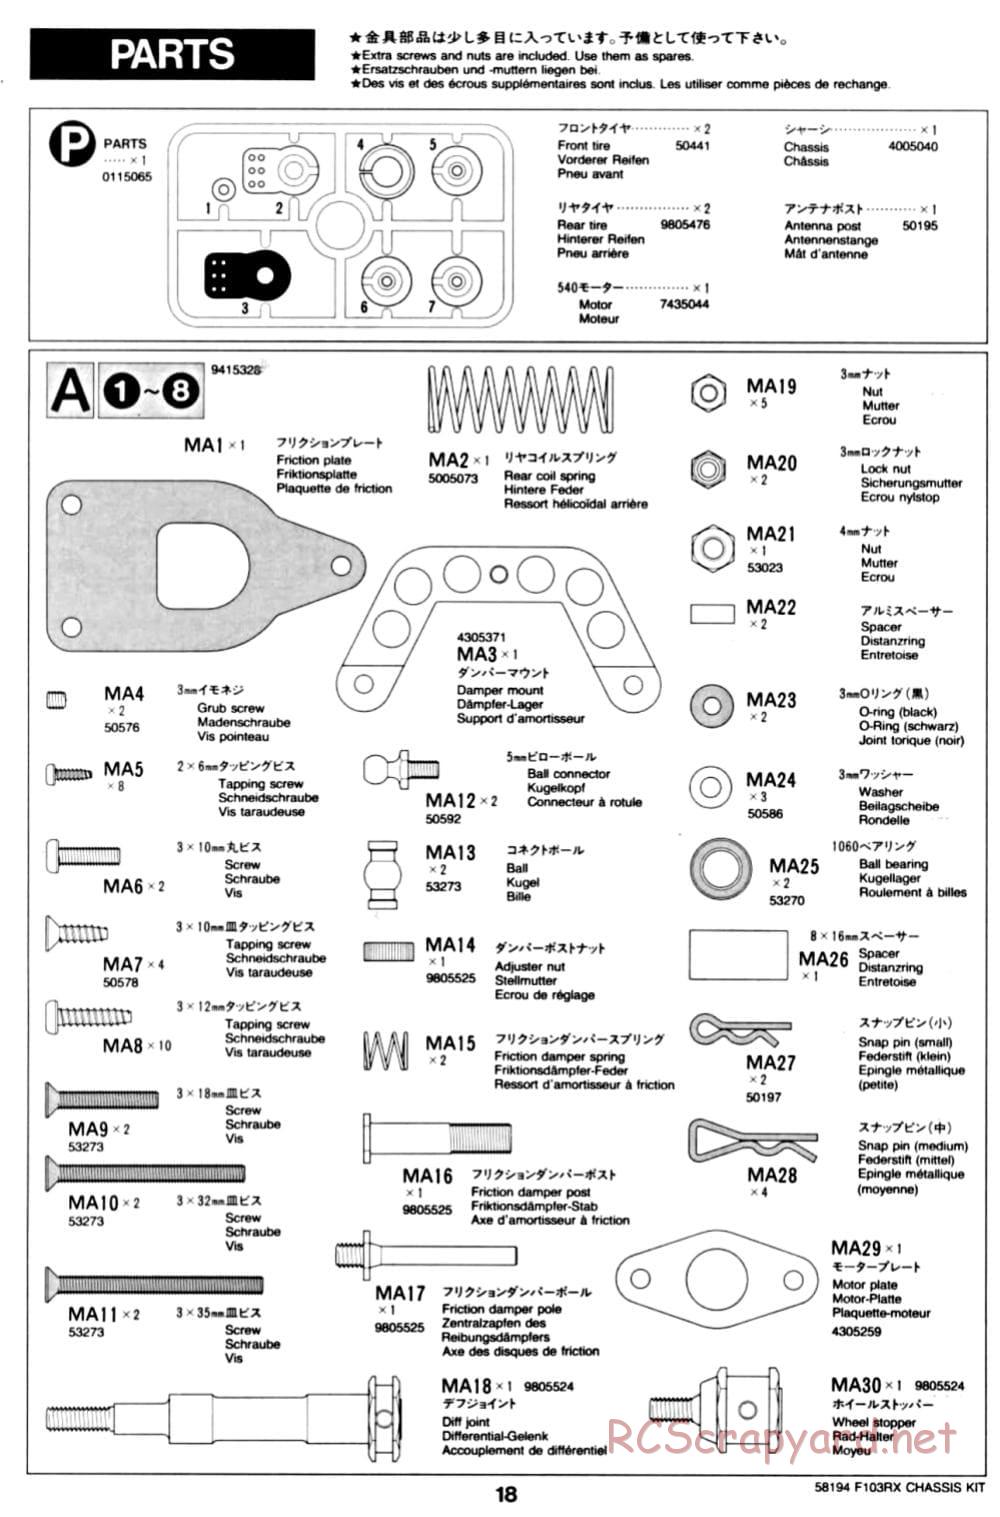 Tamiya - F103RX Chassis - Manual - Page 18